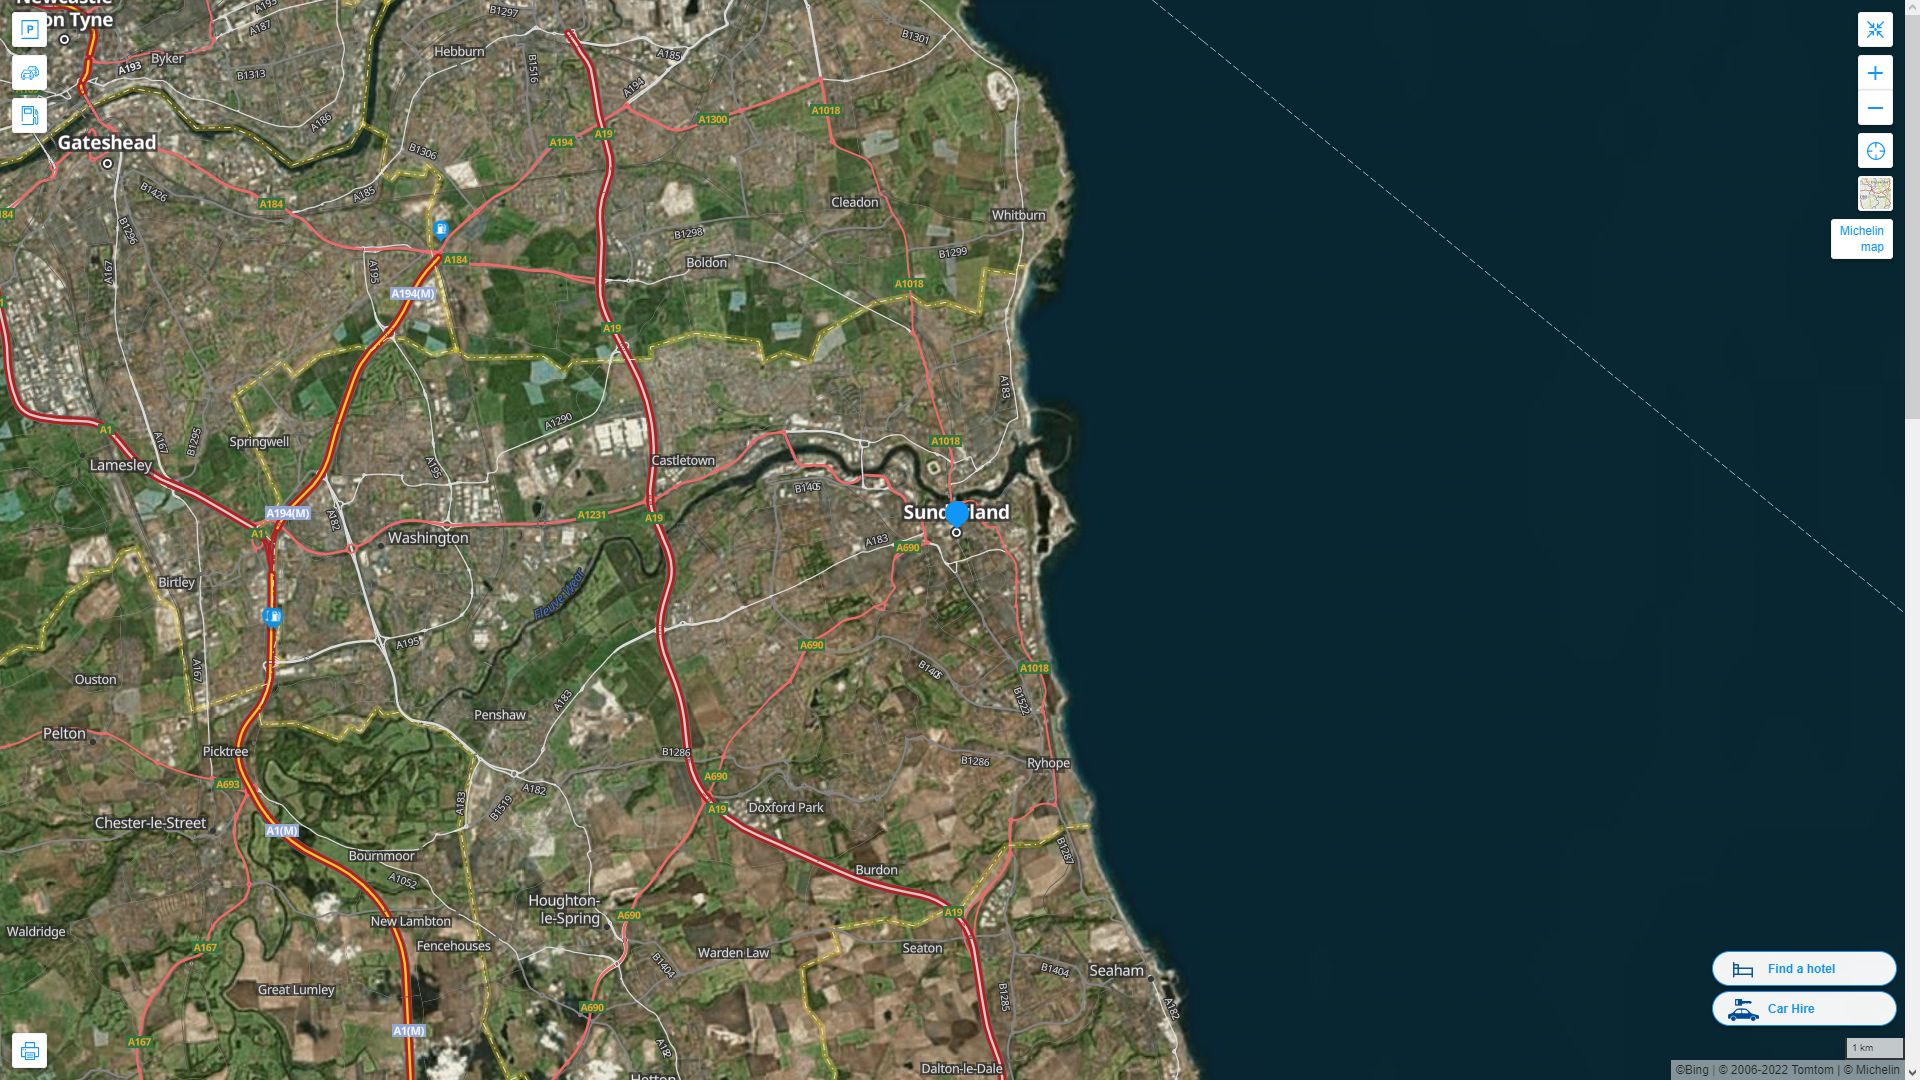 Sunderland Royaume Uni Autoroute et carte routiere avec vue satellite